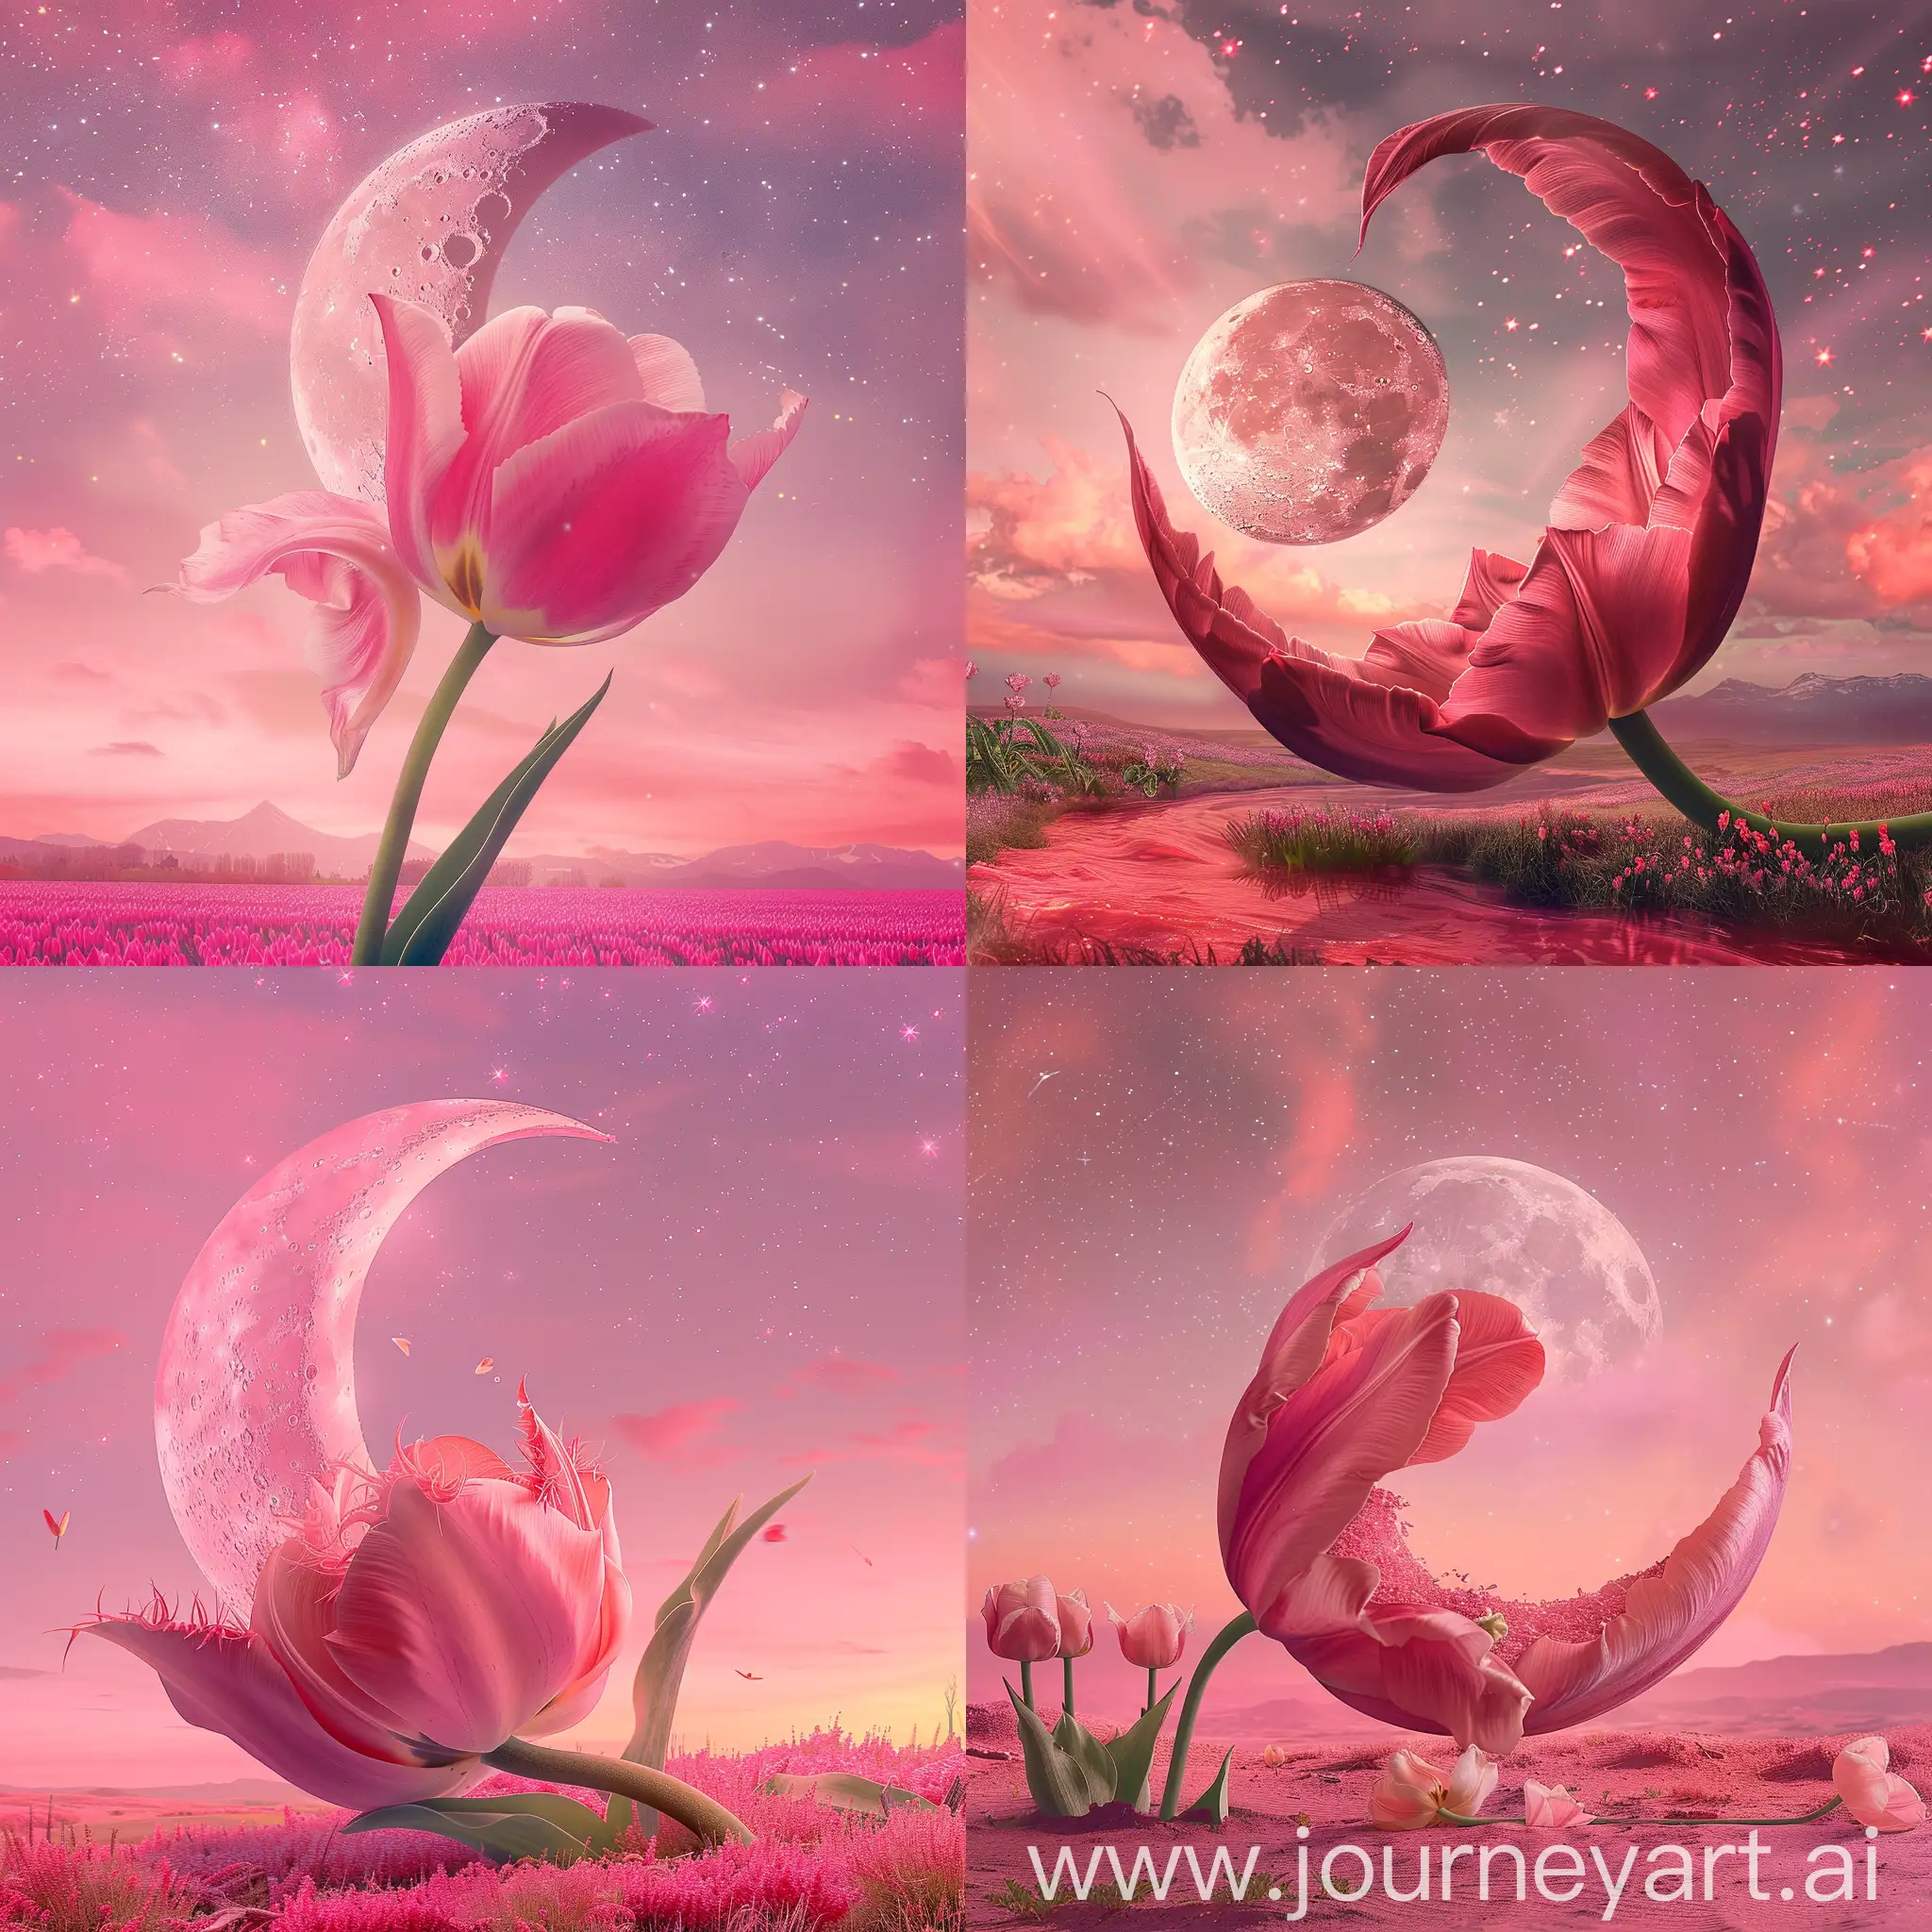 Огромная розовая луна лежит в большом открытом розовом нагнувшемся от ветра наклоненном тюльпане, розовое звездное небо, профессиональное фото , высокое качество,ultraH